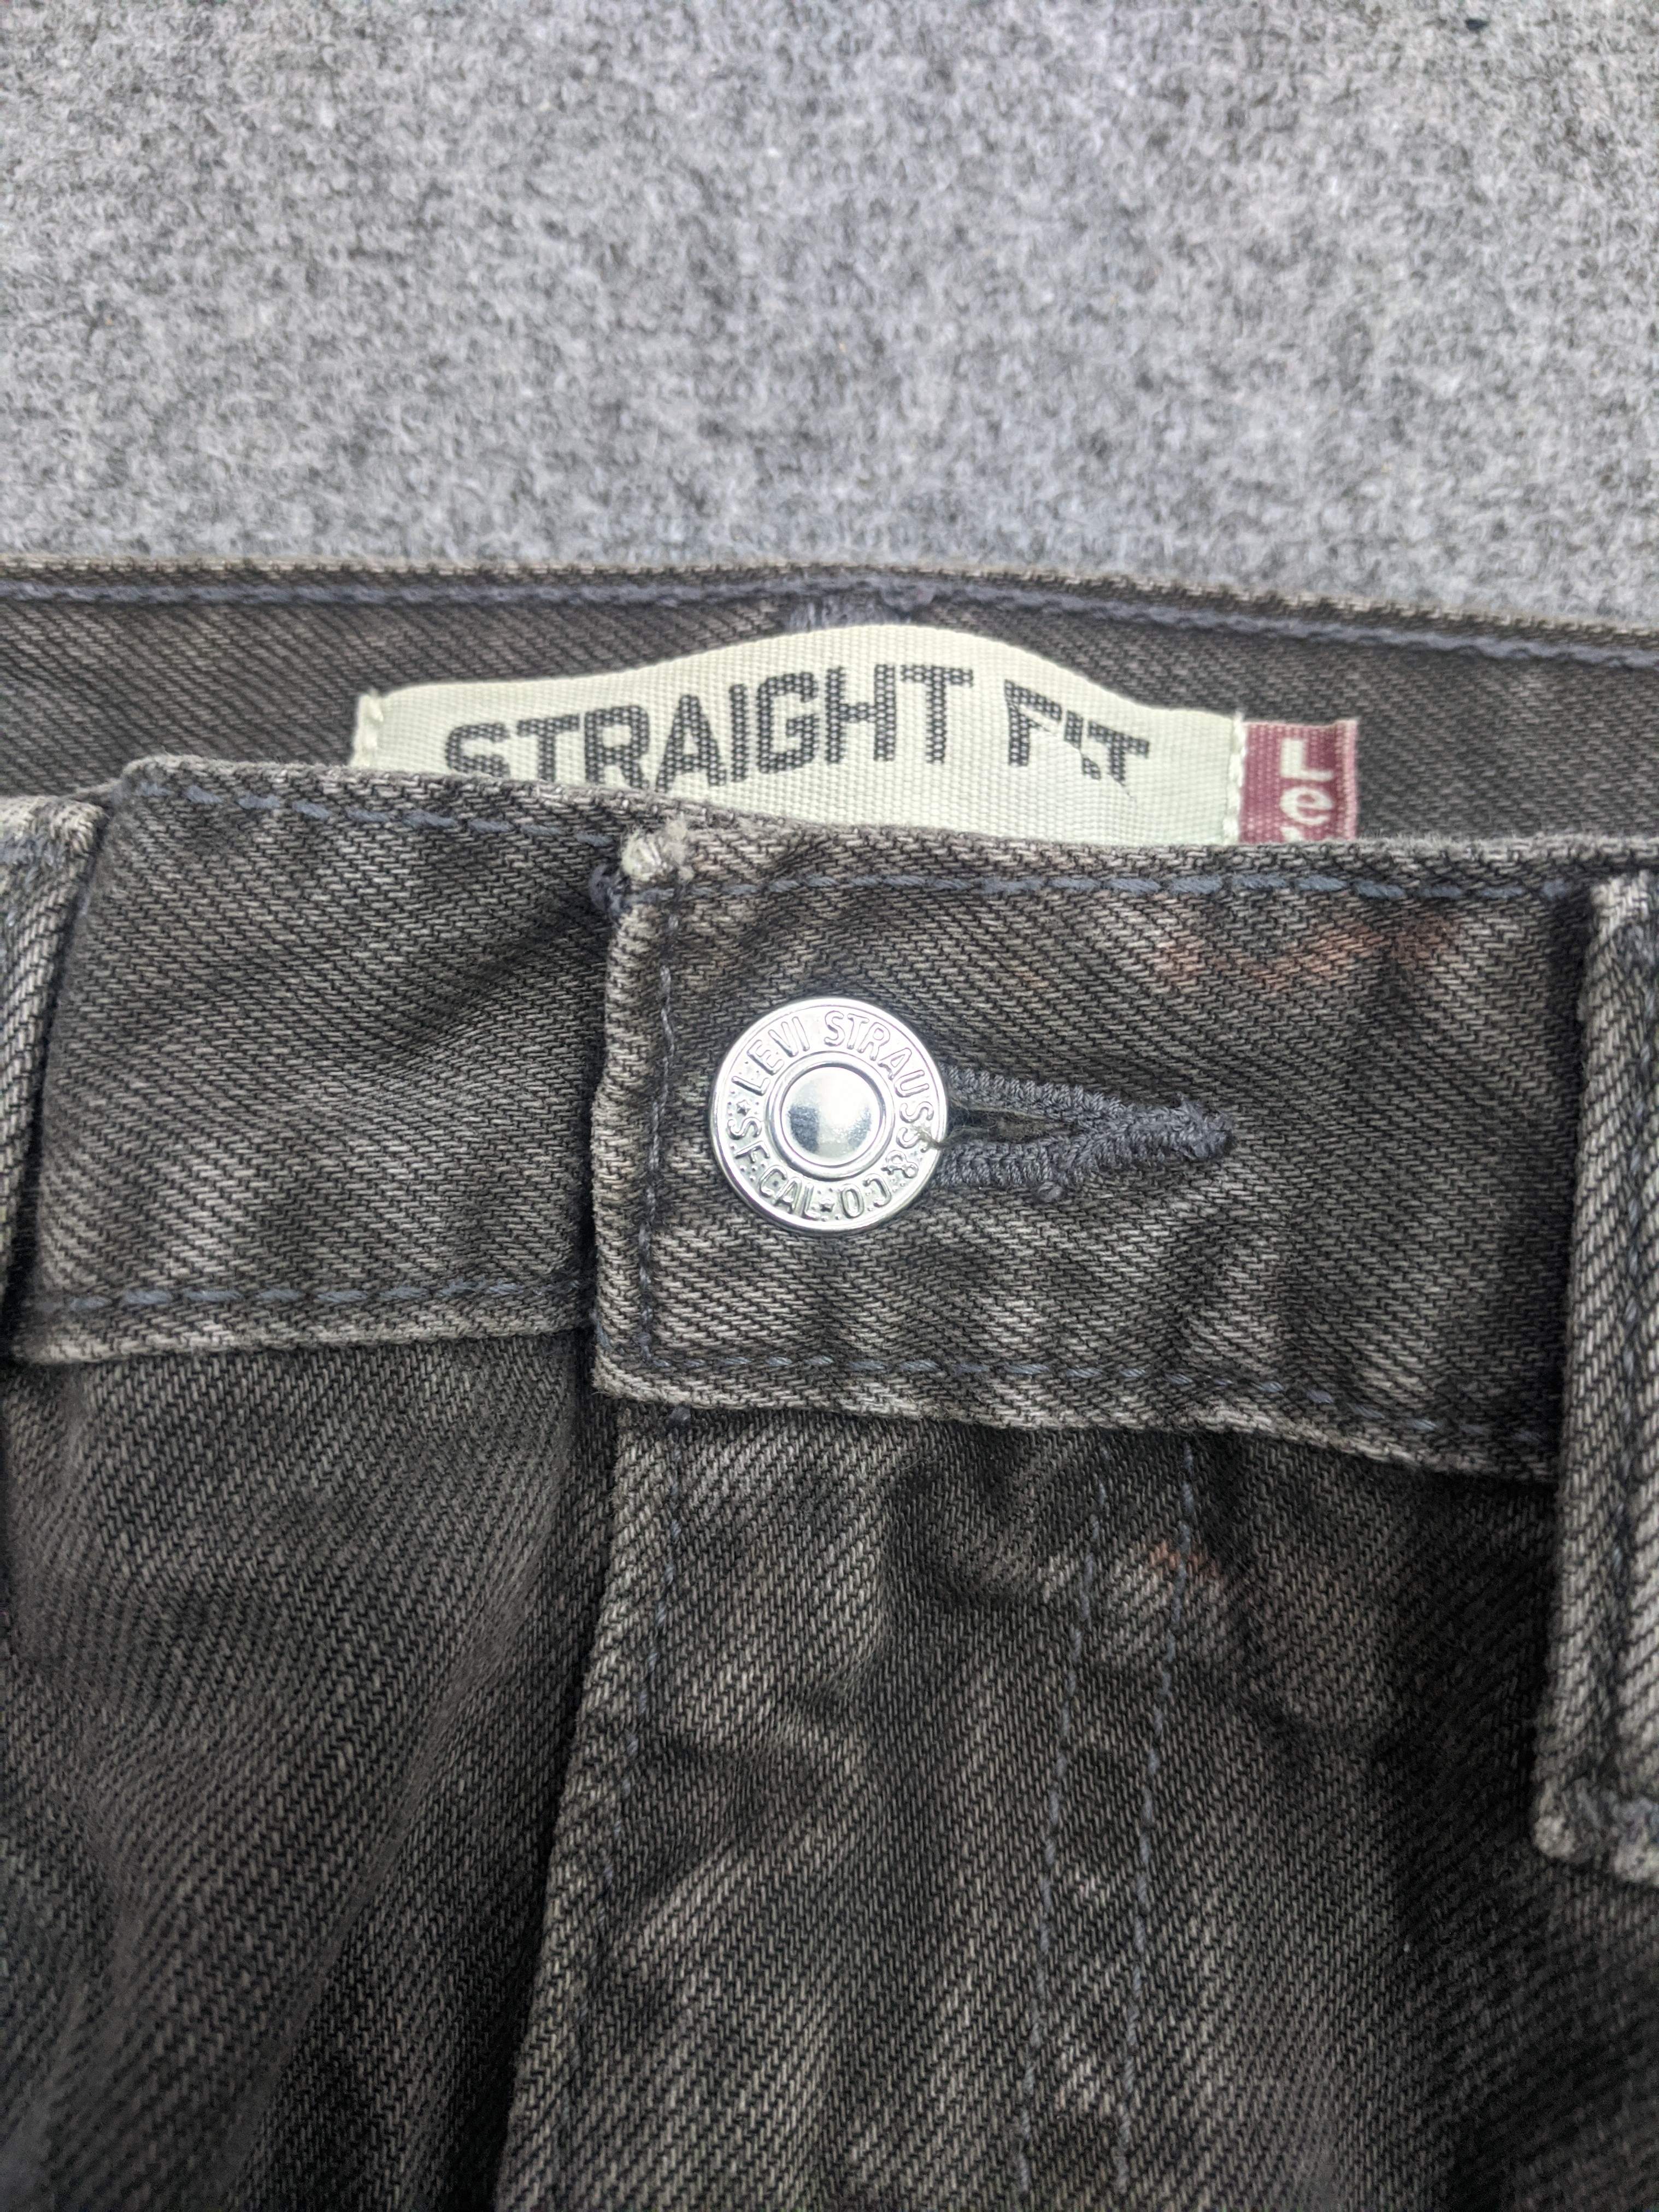 Vintage - Vintage Levis 505 Light Wash Jeans - 7